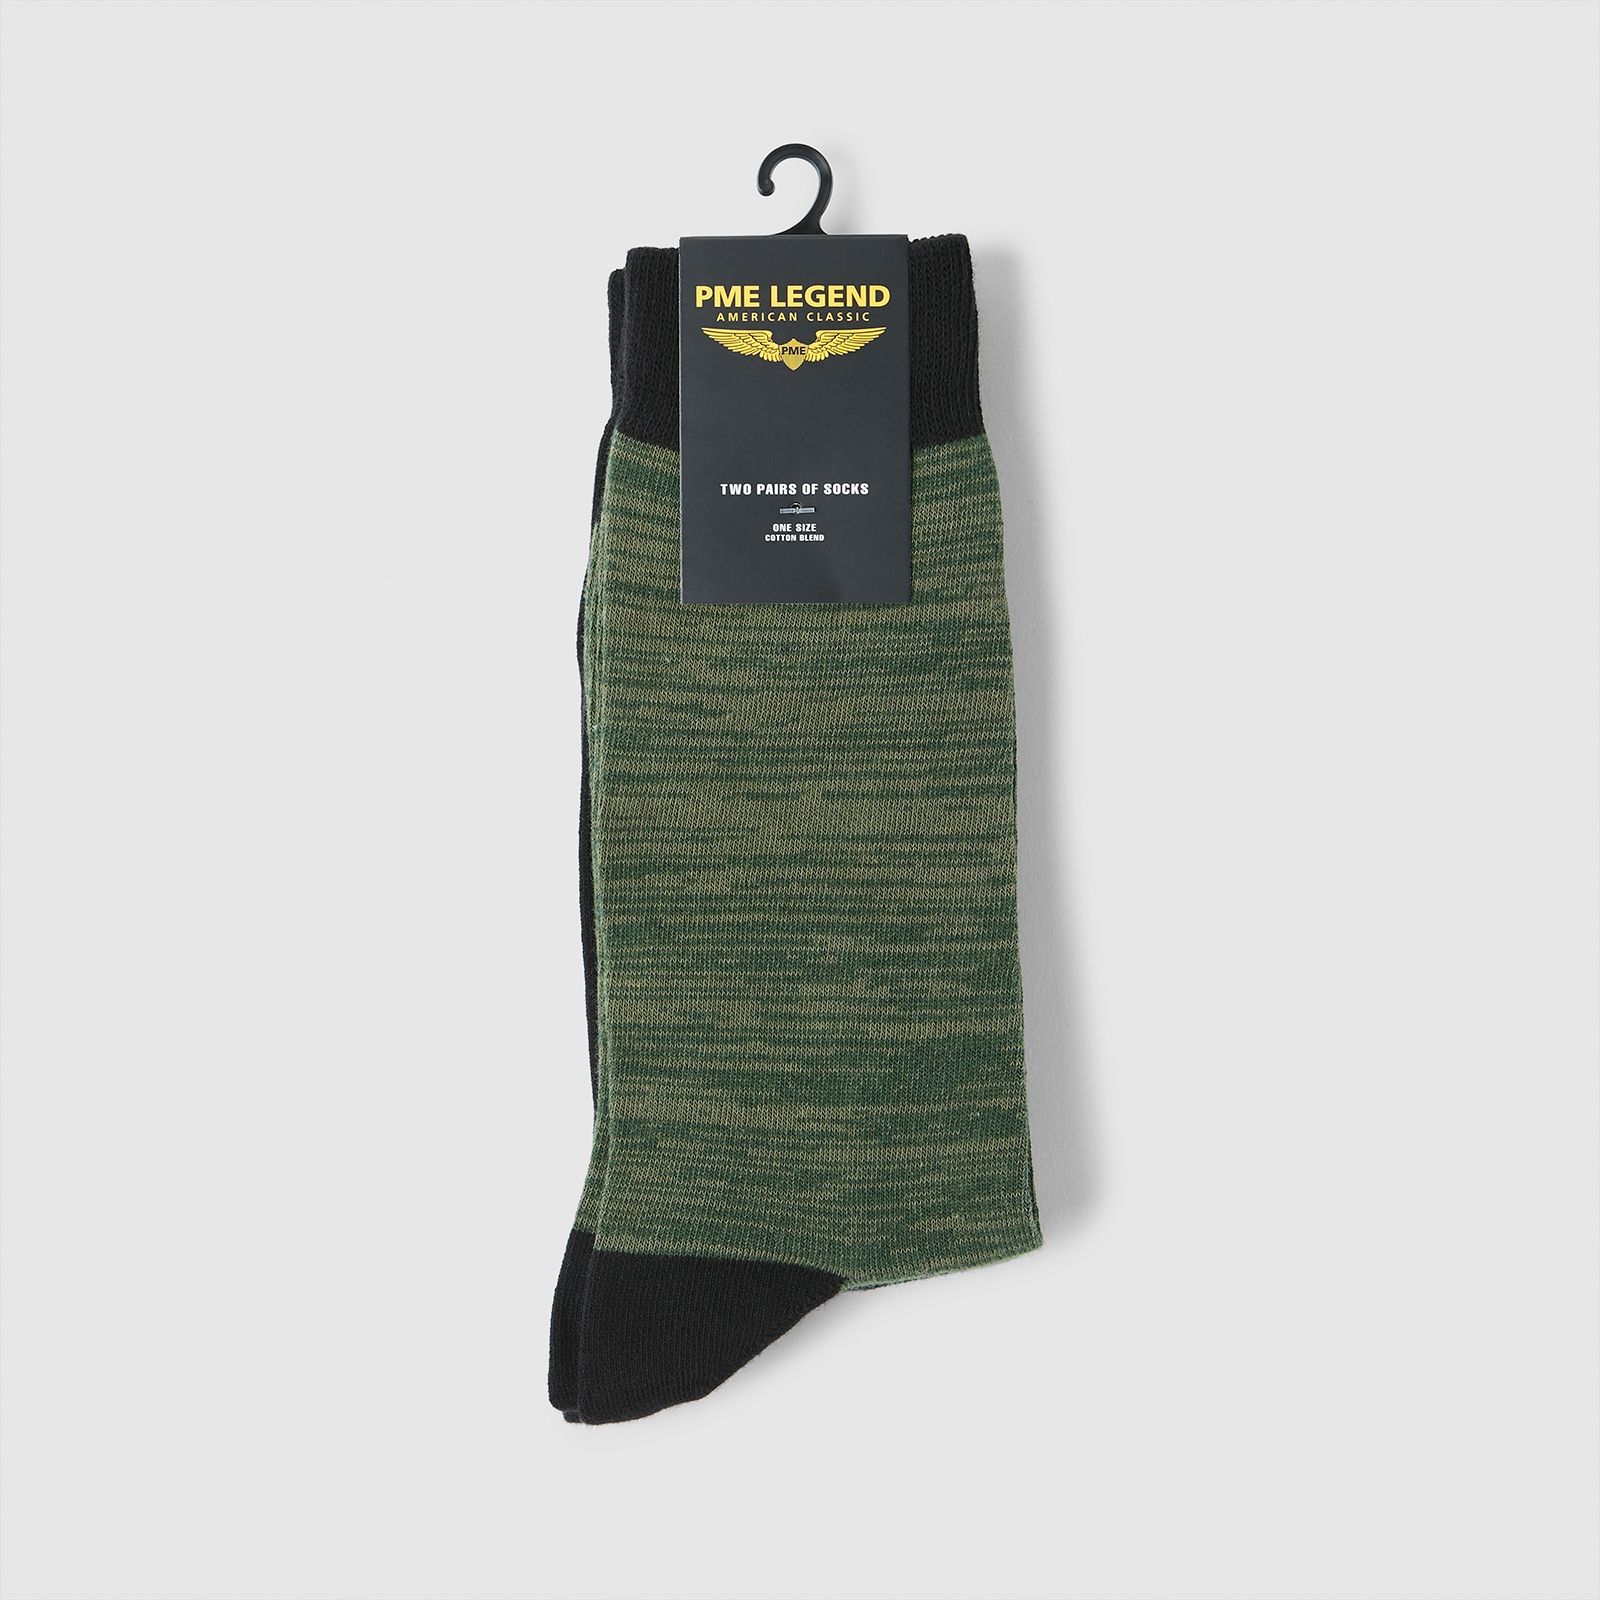 Pme Legend Socks Cotton blend 2-pack - Black Black 00097598-999